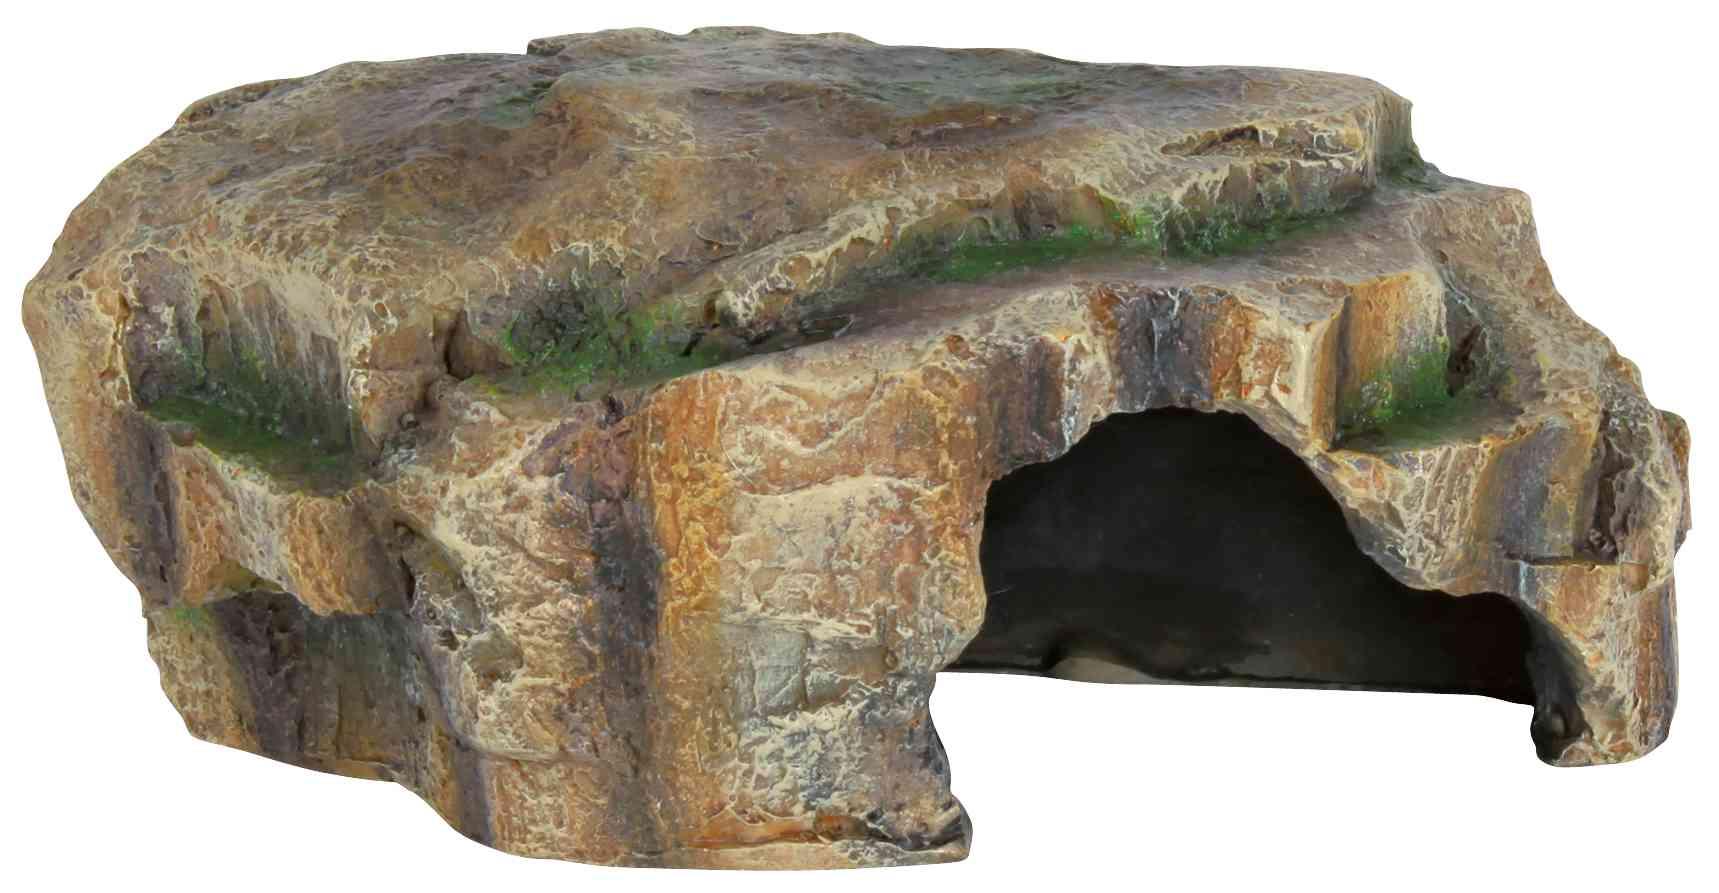 TRIXIE Reptilienhöhle im Regenwald Design, 16 x 7 x 11 cm